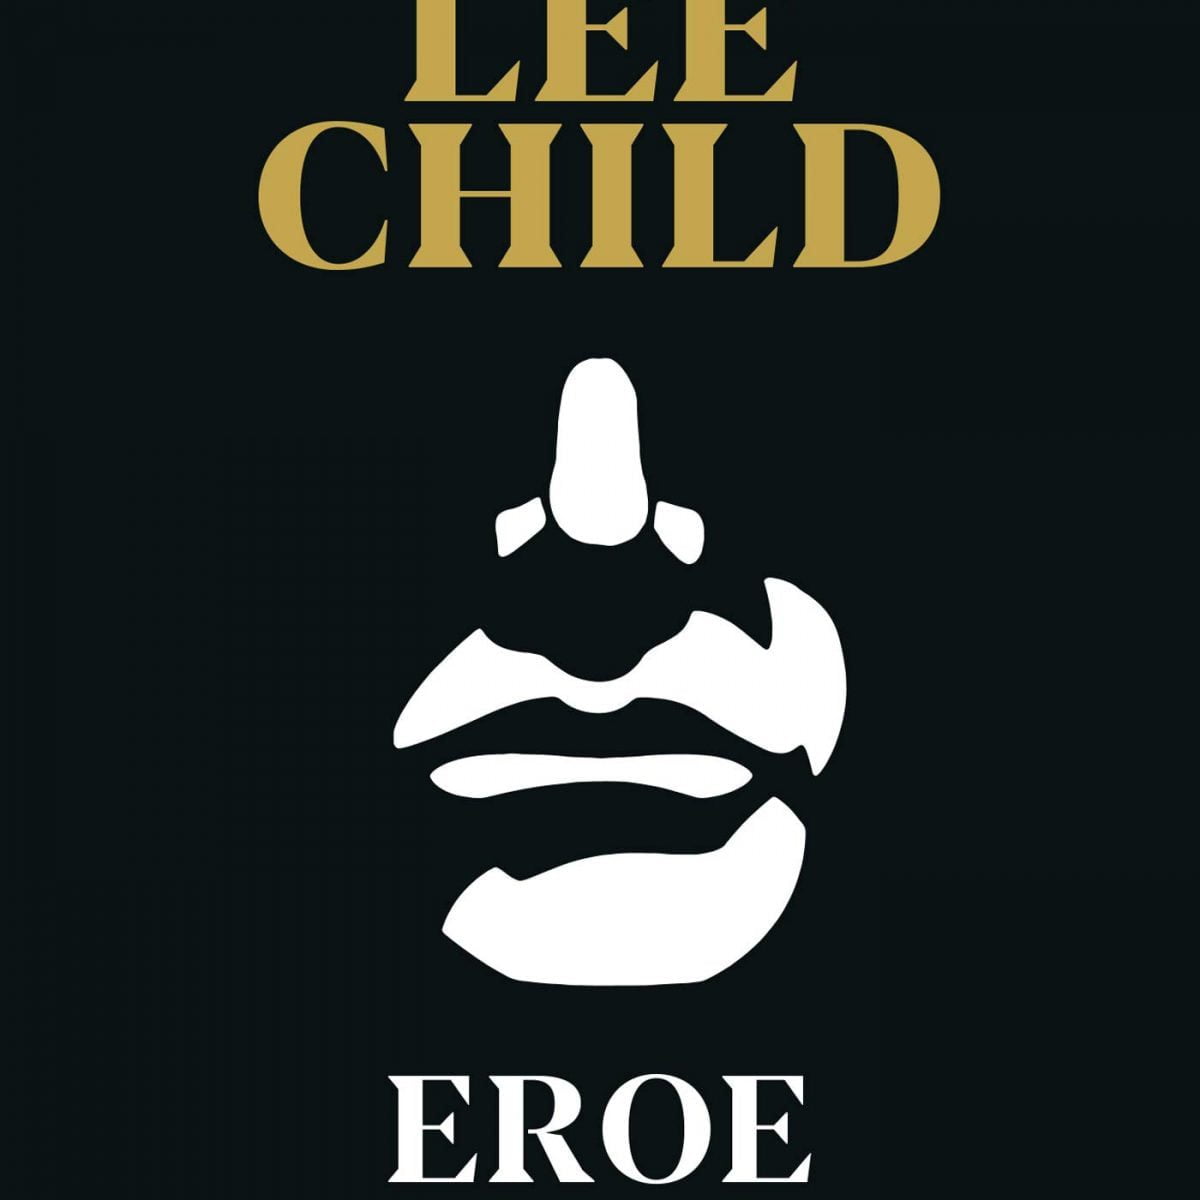 Copertina libro "eroe" di Lee Child